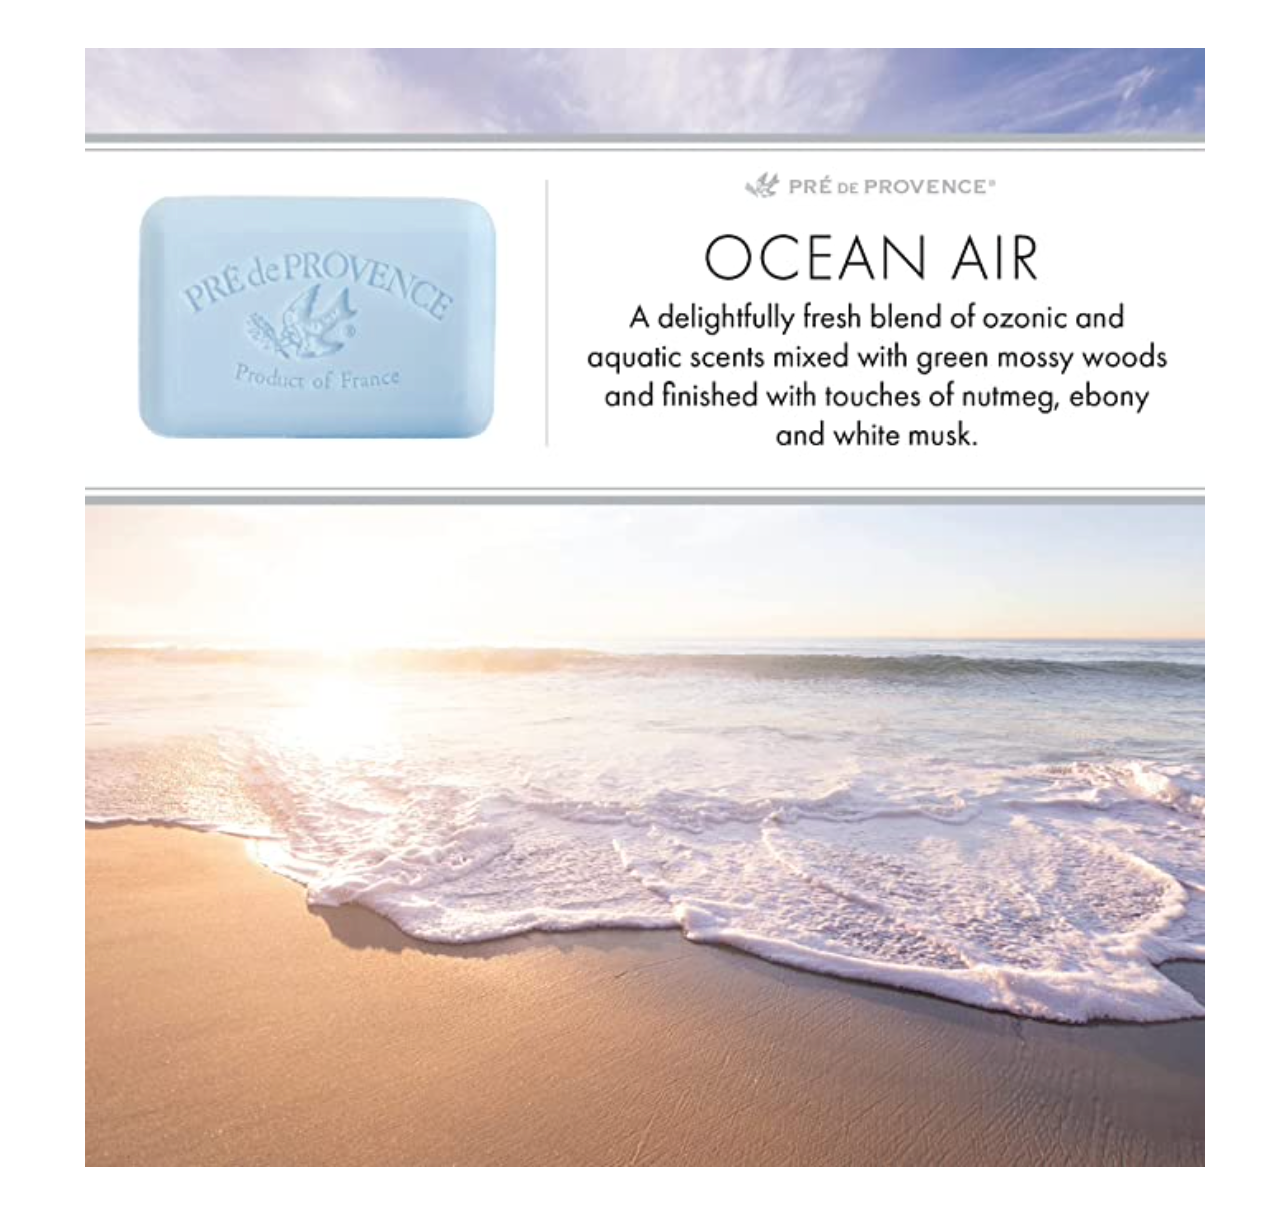 Ocean Air soap bar by Pré de Provence